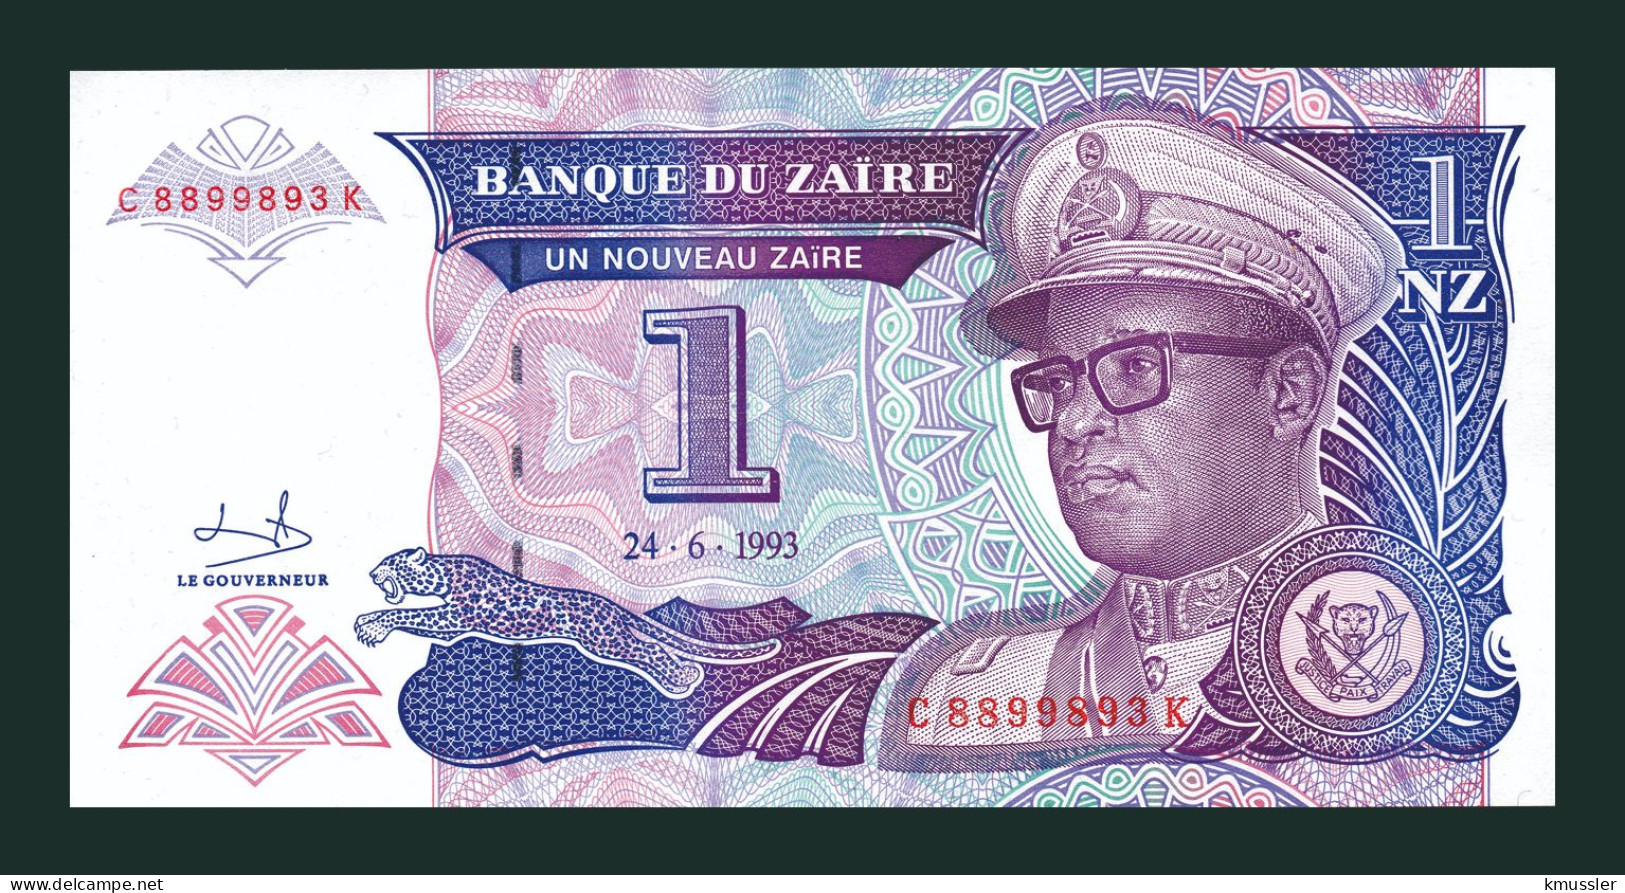 # # # Banknote Zaire 1 Nouveau Zaire 1992 (P-52) UNC # # # - Zaire